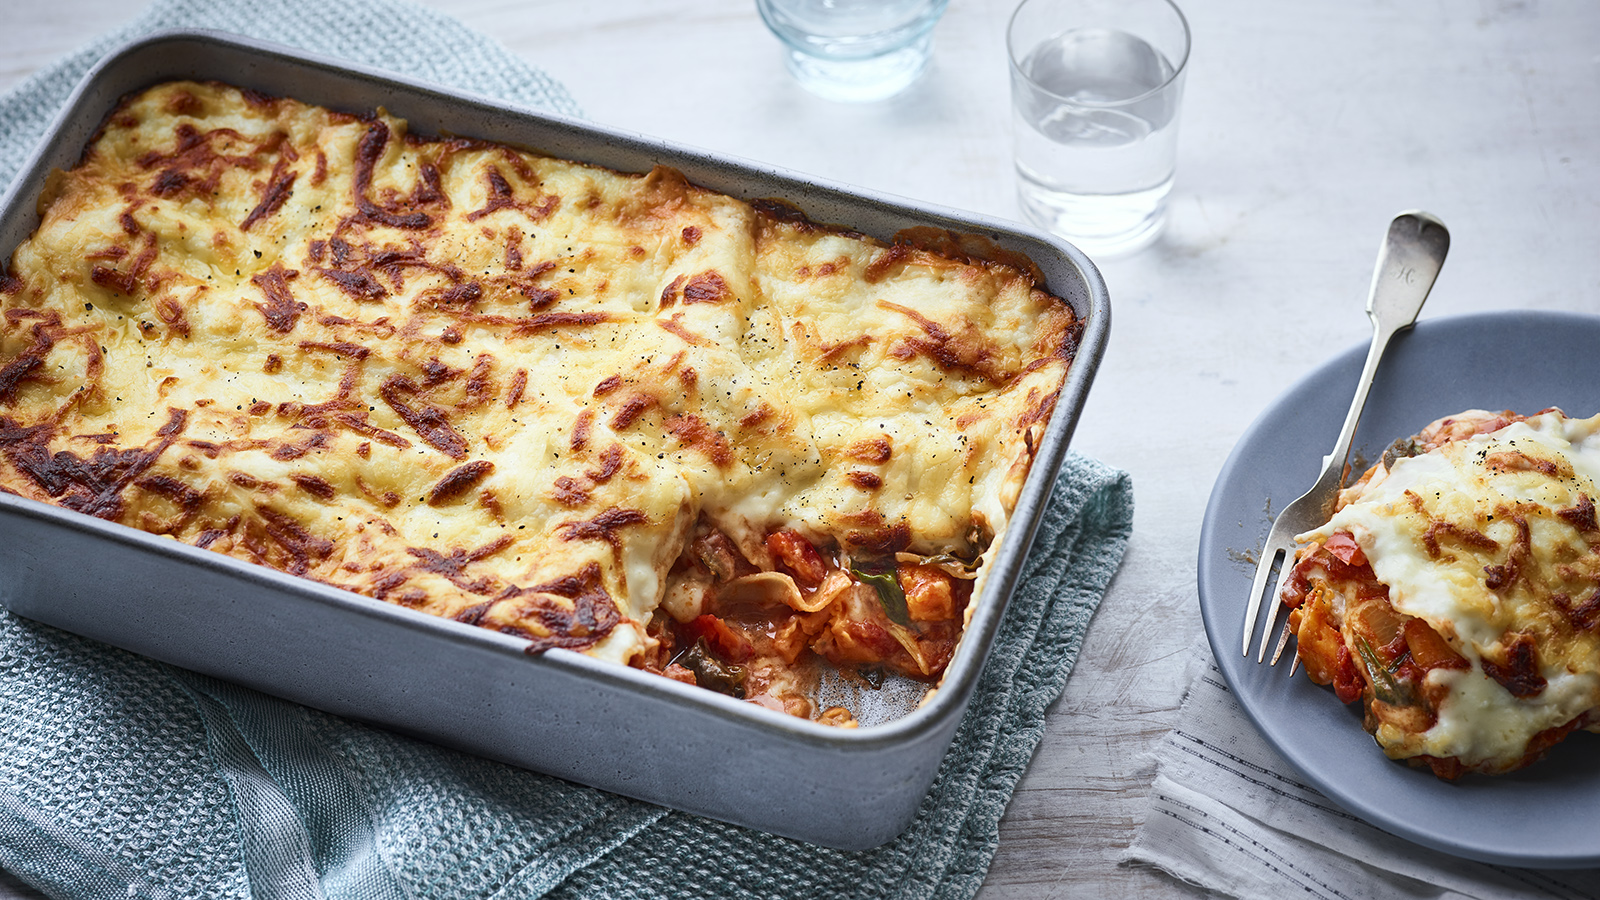 Simply Delicious: BBC's Best Vegetarian Lasagna Recipe